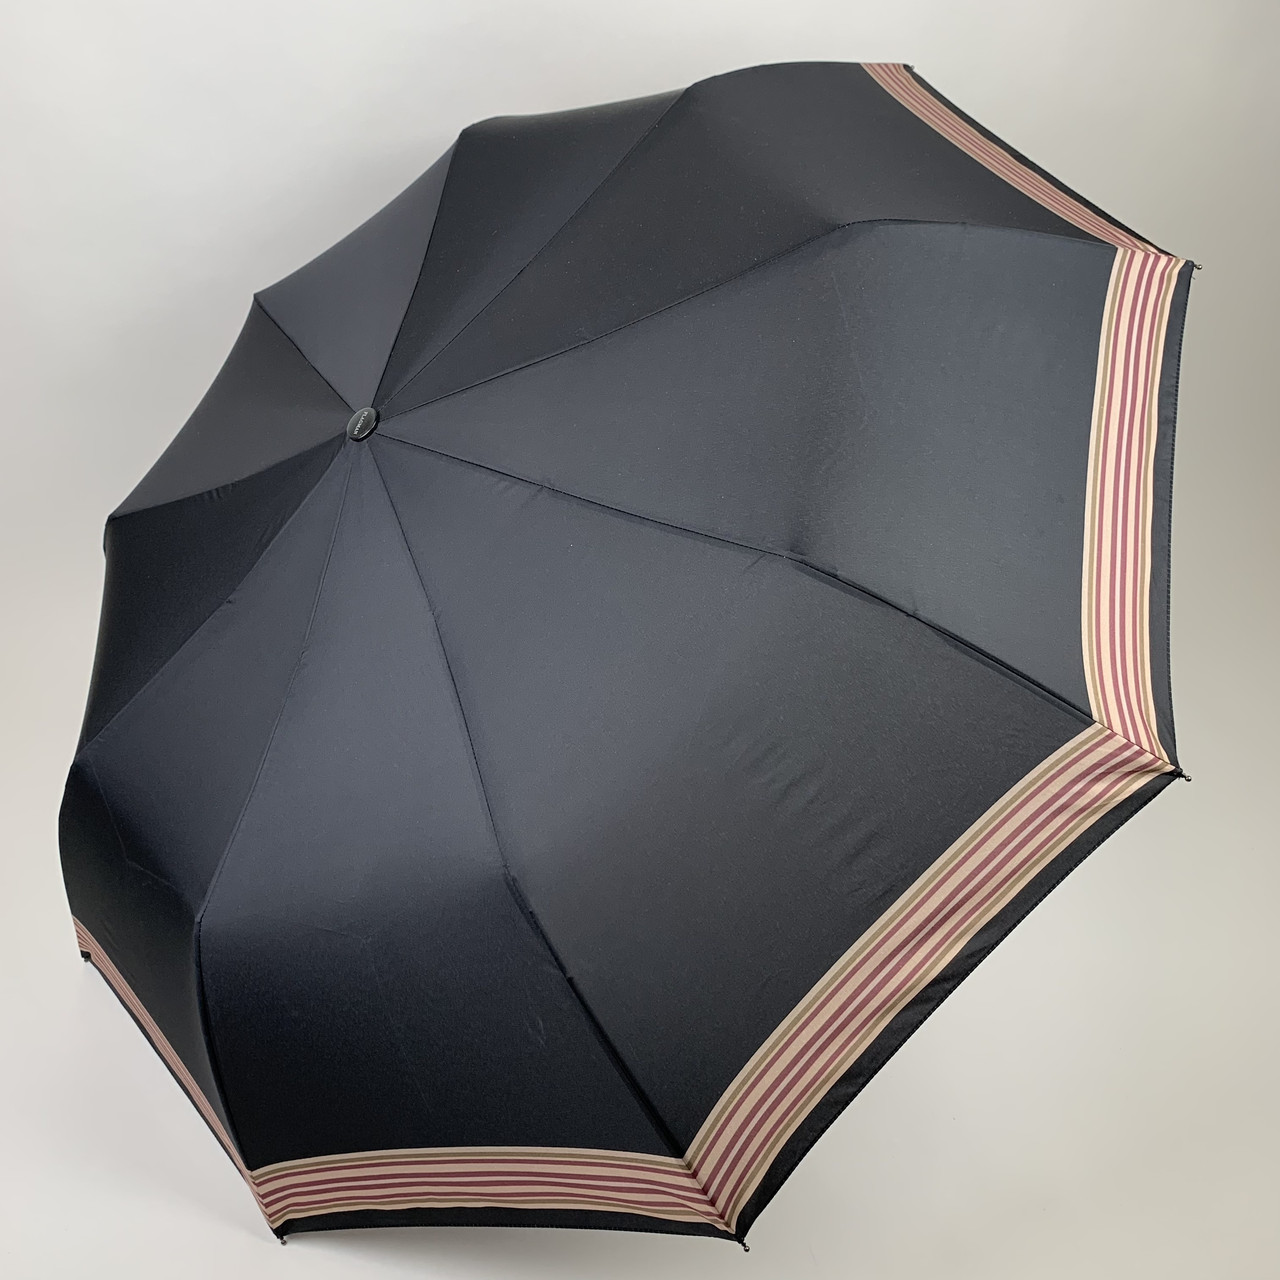 Жіноча складна парасоля напівавтомат від Flagman-TheBest, чорний, 0139-3, фото 1